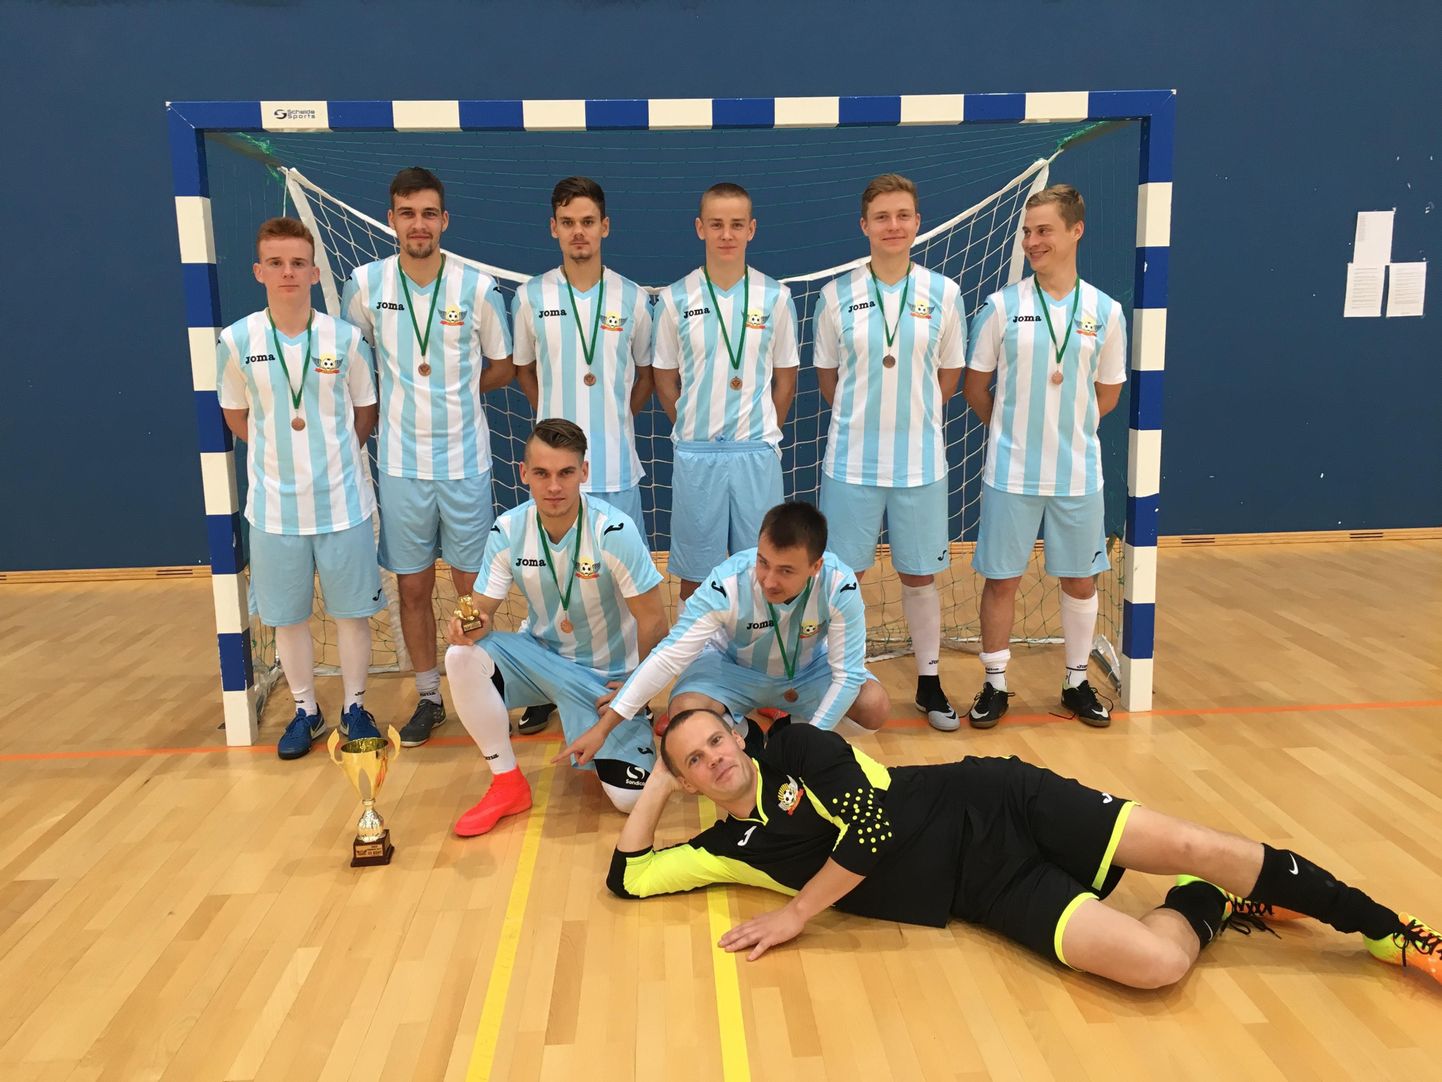 Abjas esimest korda teoks saanud saalijalgpalliturniiri «Mulgi karikas» võitis Tartu JK Maksimumi meeskond, pildil on aga edukaim kohalik meeskond JK Karksi, kes lõpetas turniiri kolmanda kohaga.